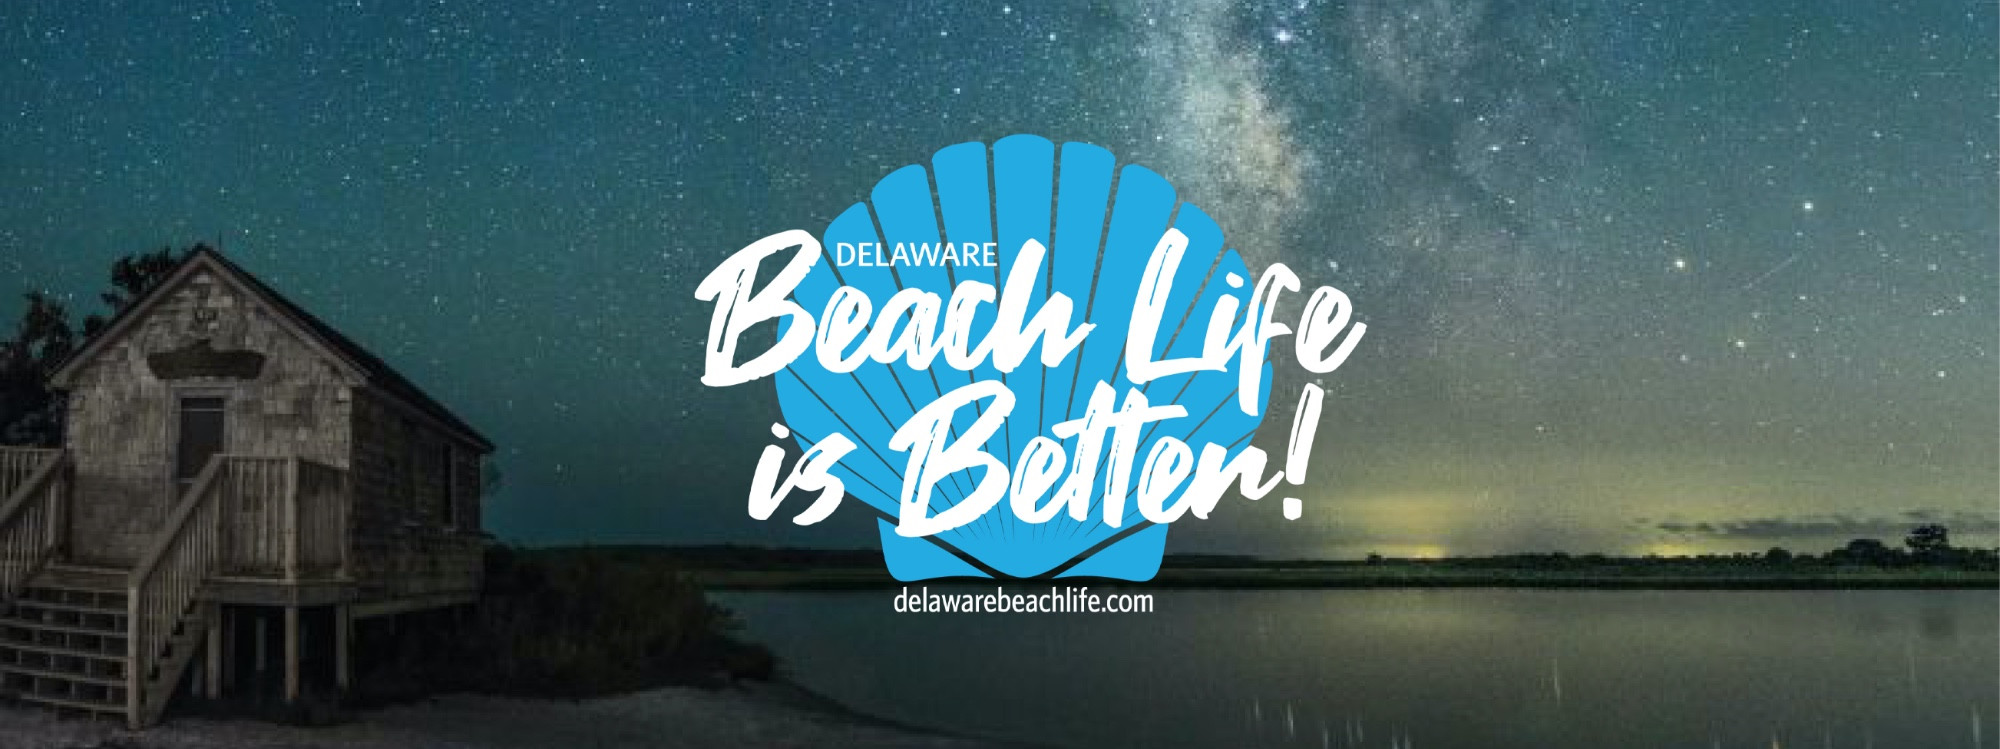 Beach Life is Better Banner 1 01